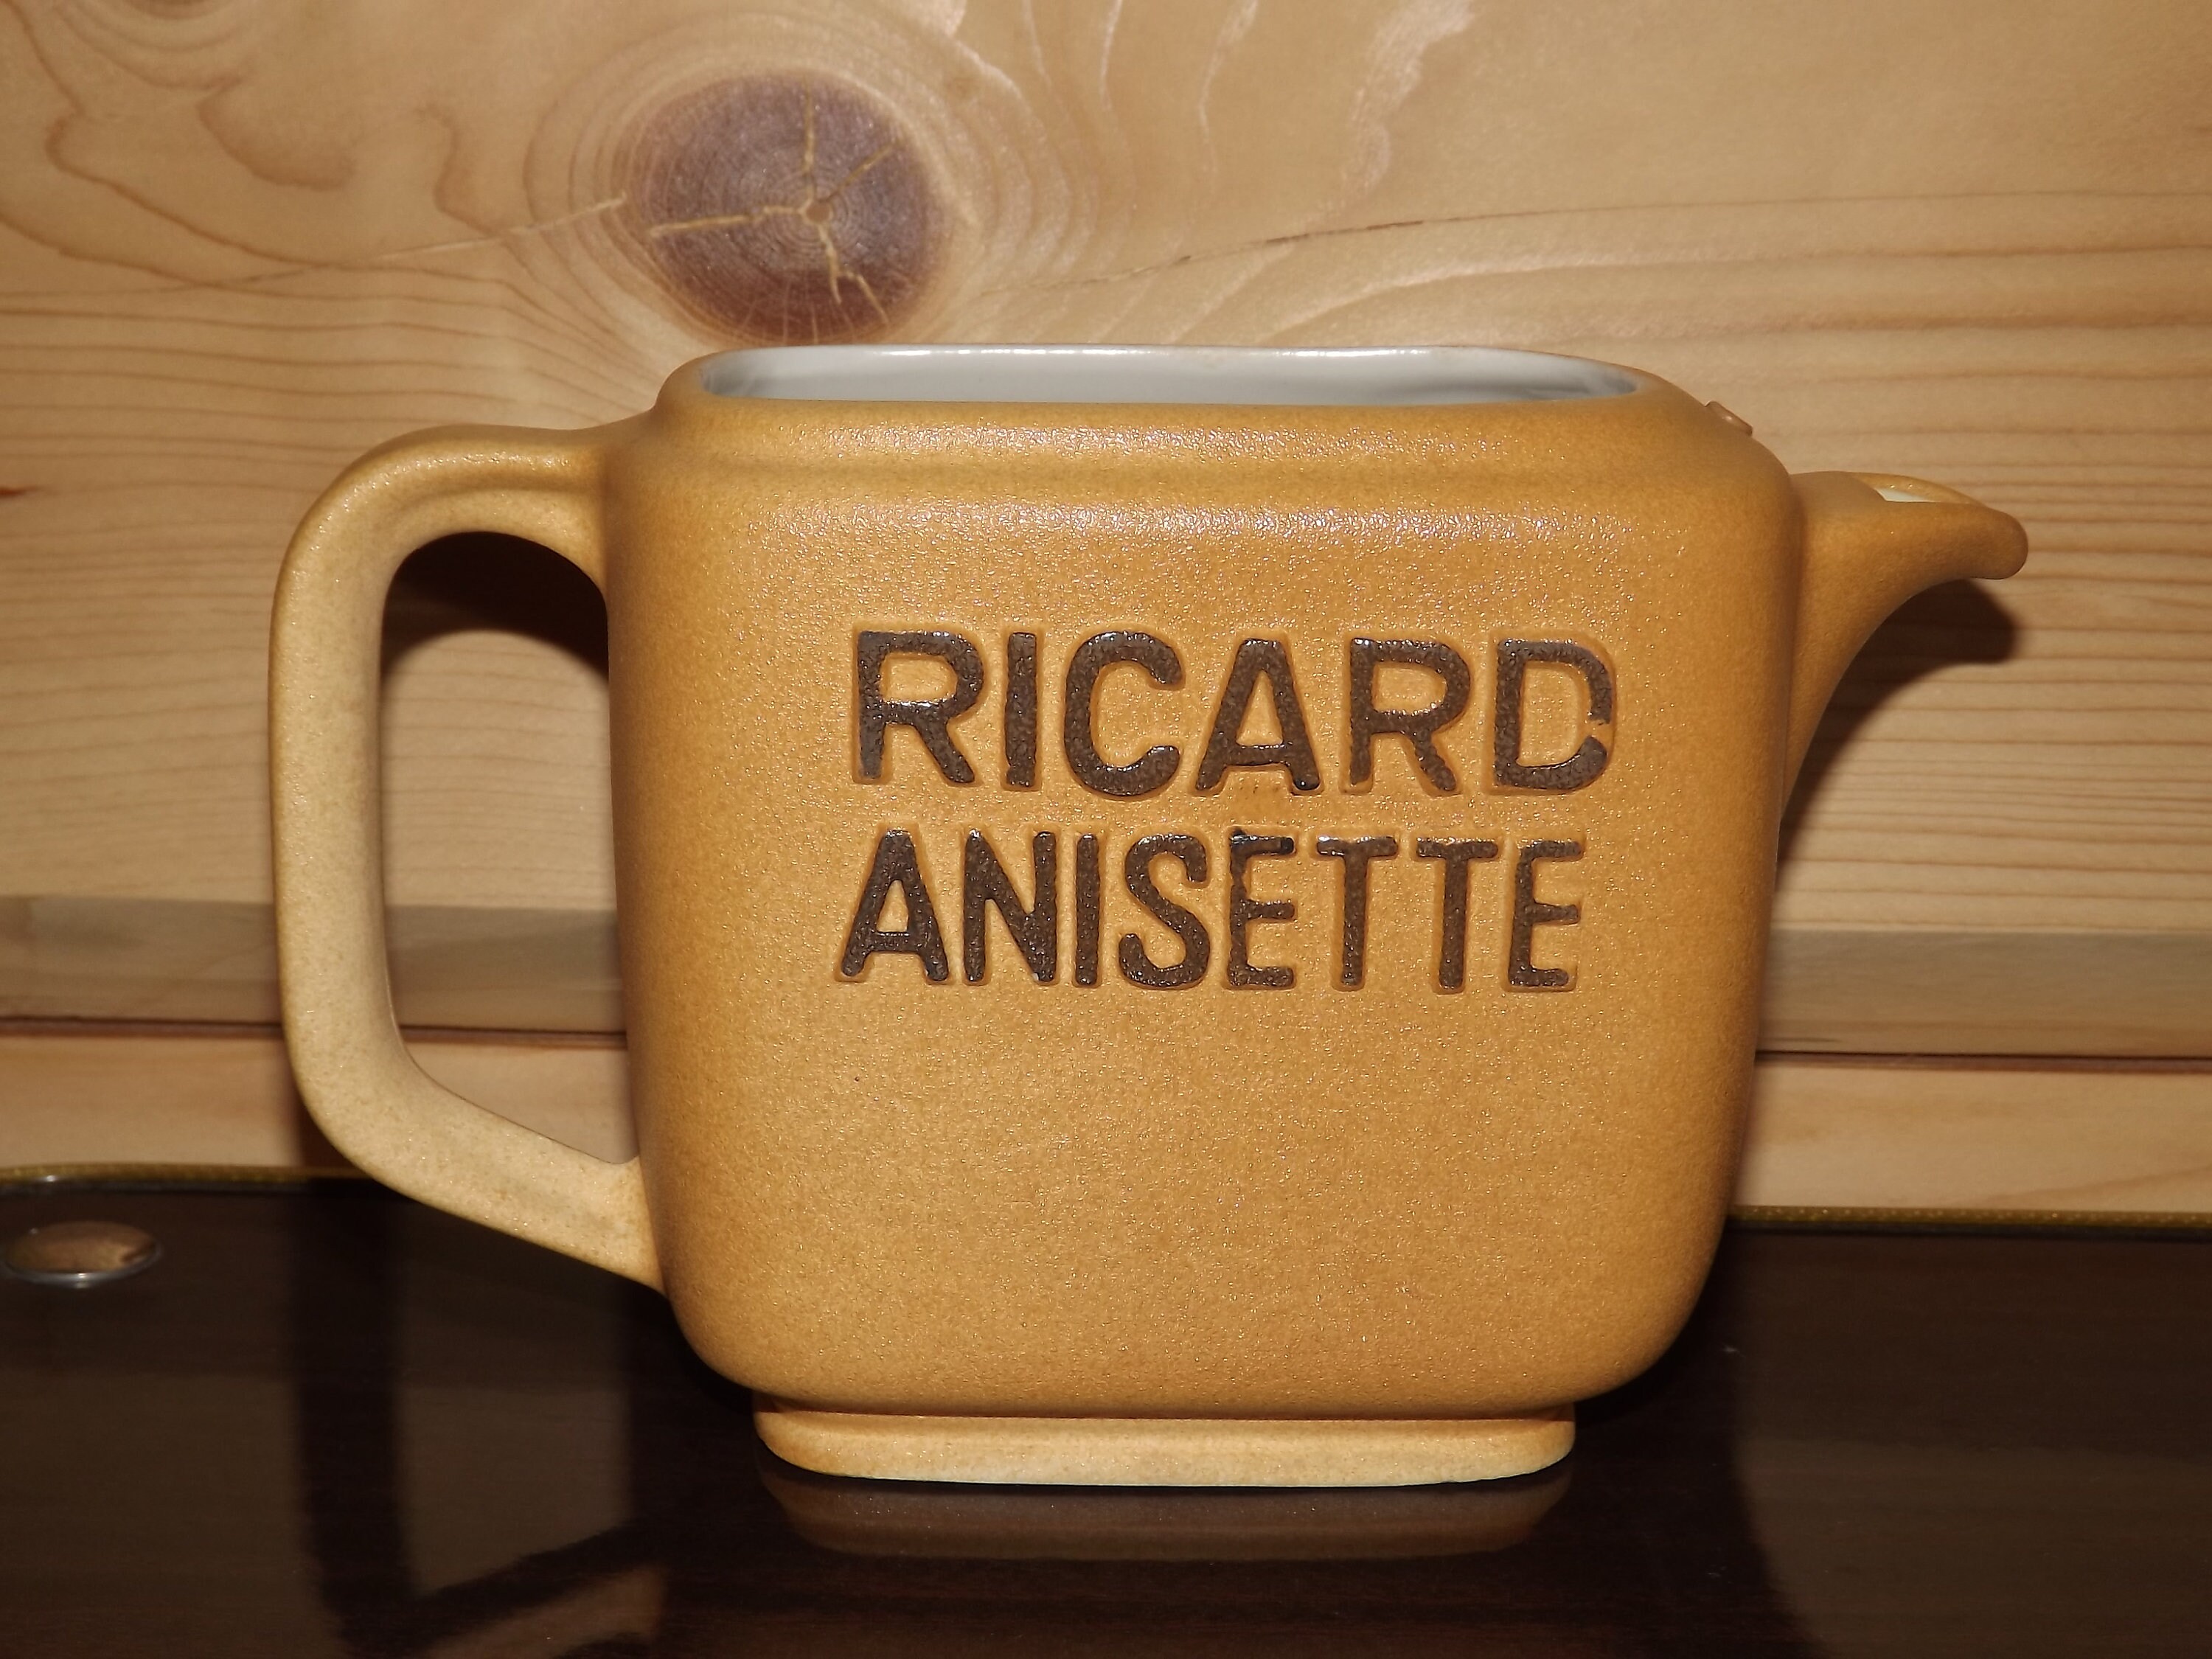 Carafe publicitaire en céramique pour Ricard Anisette des Ateliers de  céramique Ricard France - Début de Série